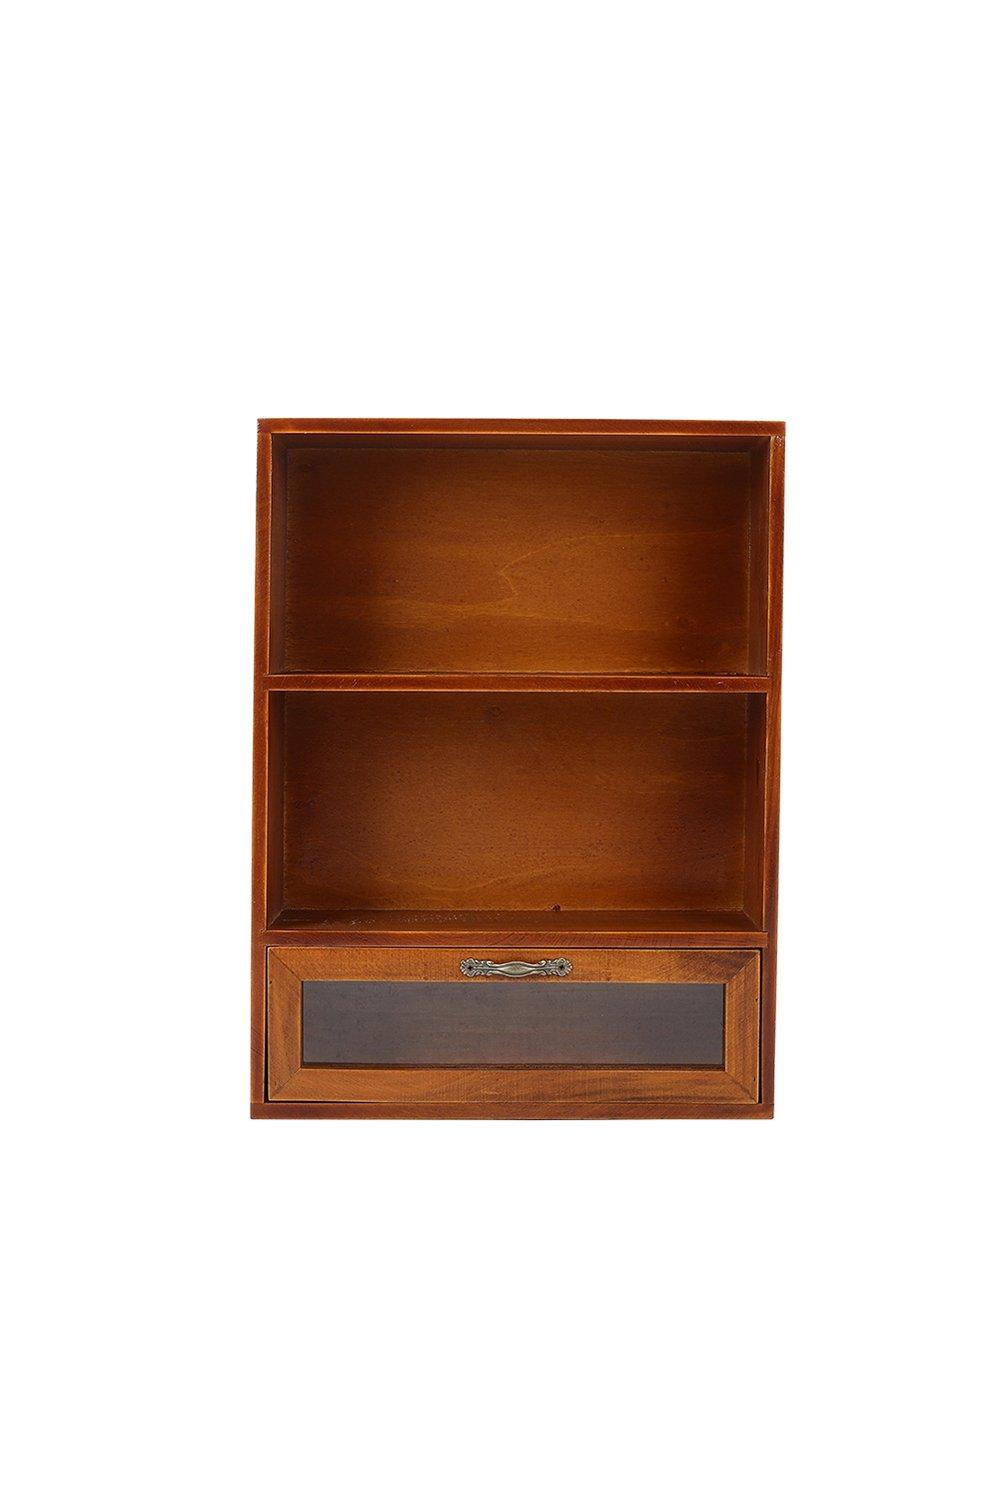 Livingandhome 6 Drawer Brown Desktop Retro Wood Storage Organizer